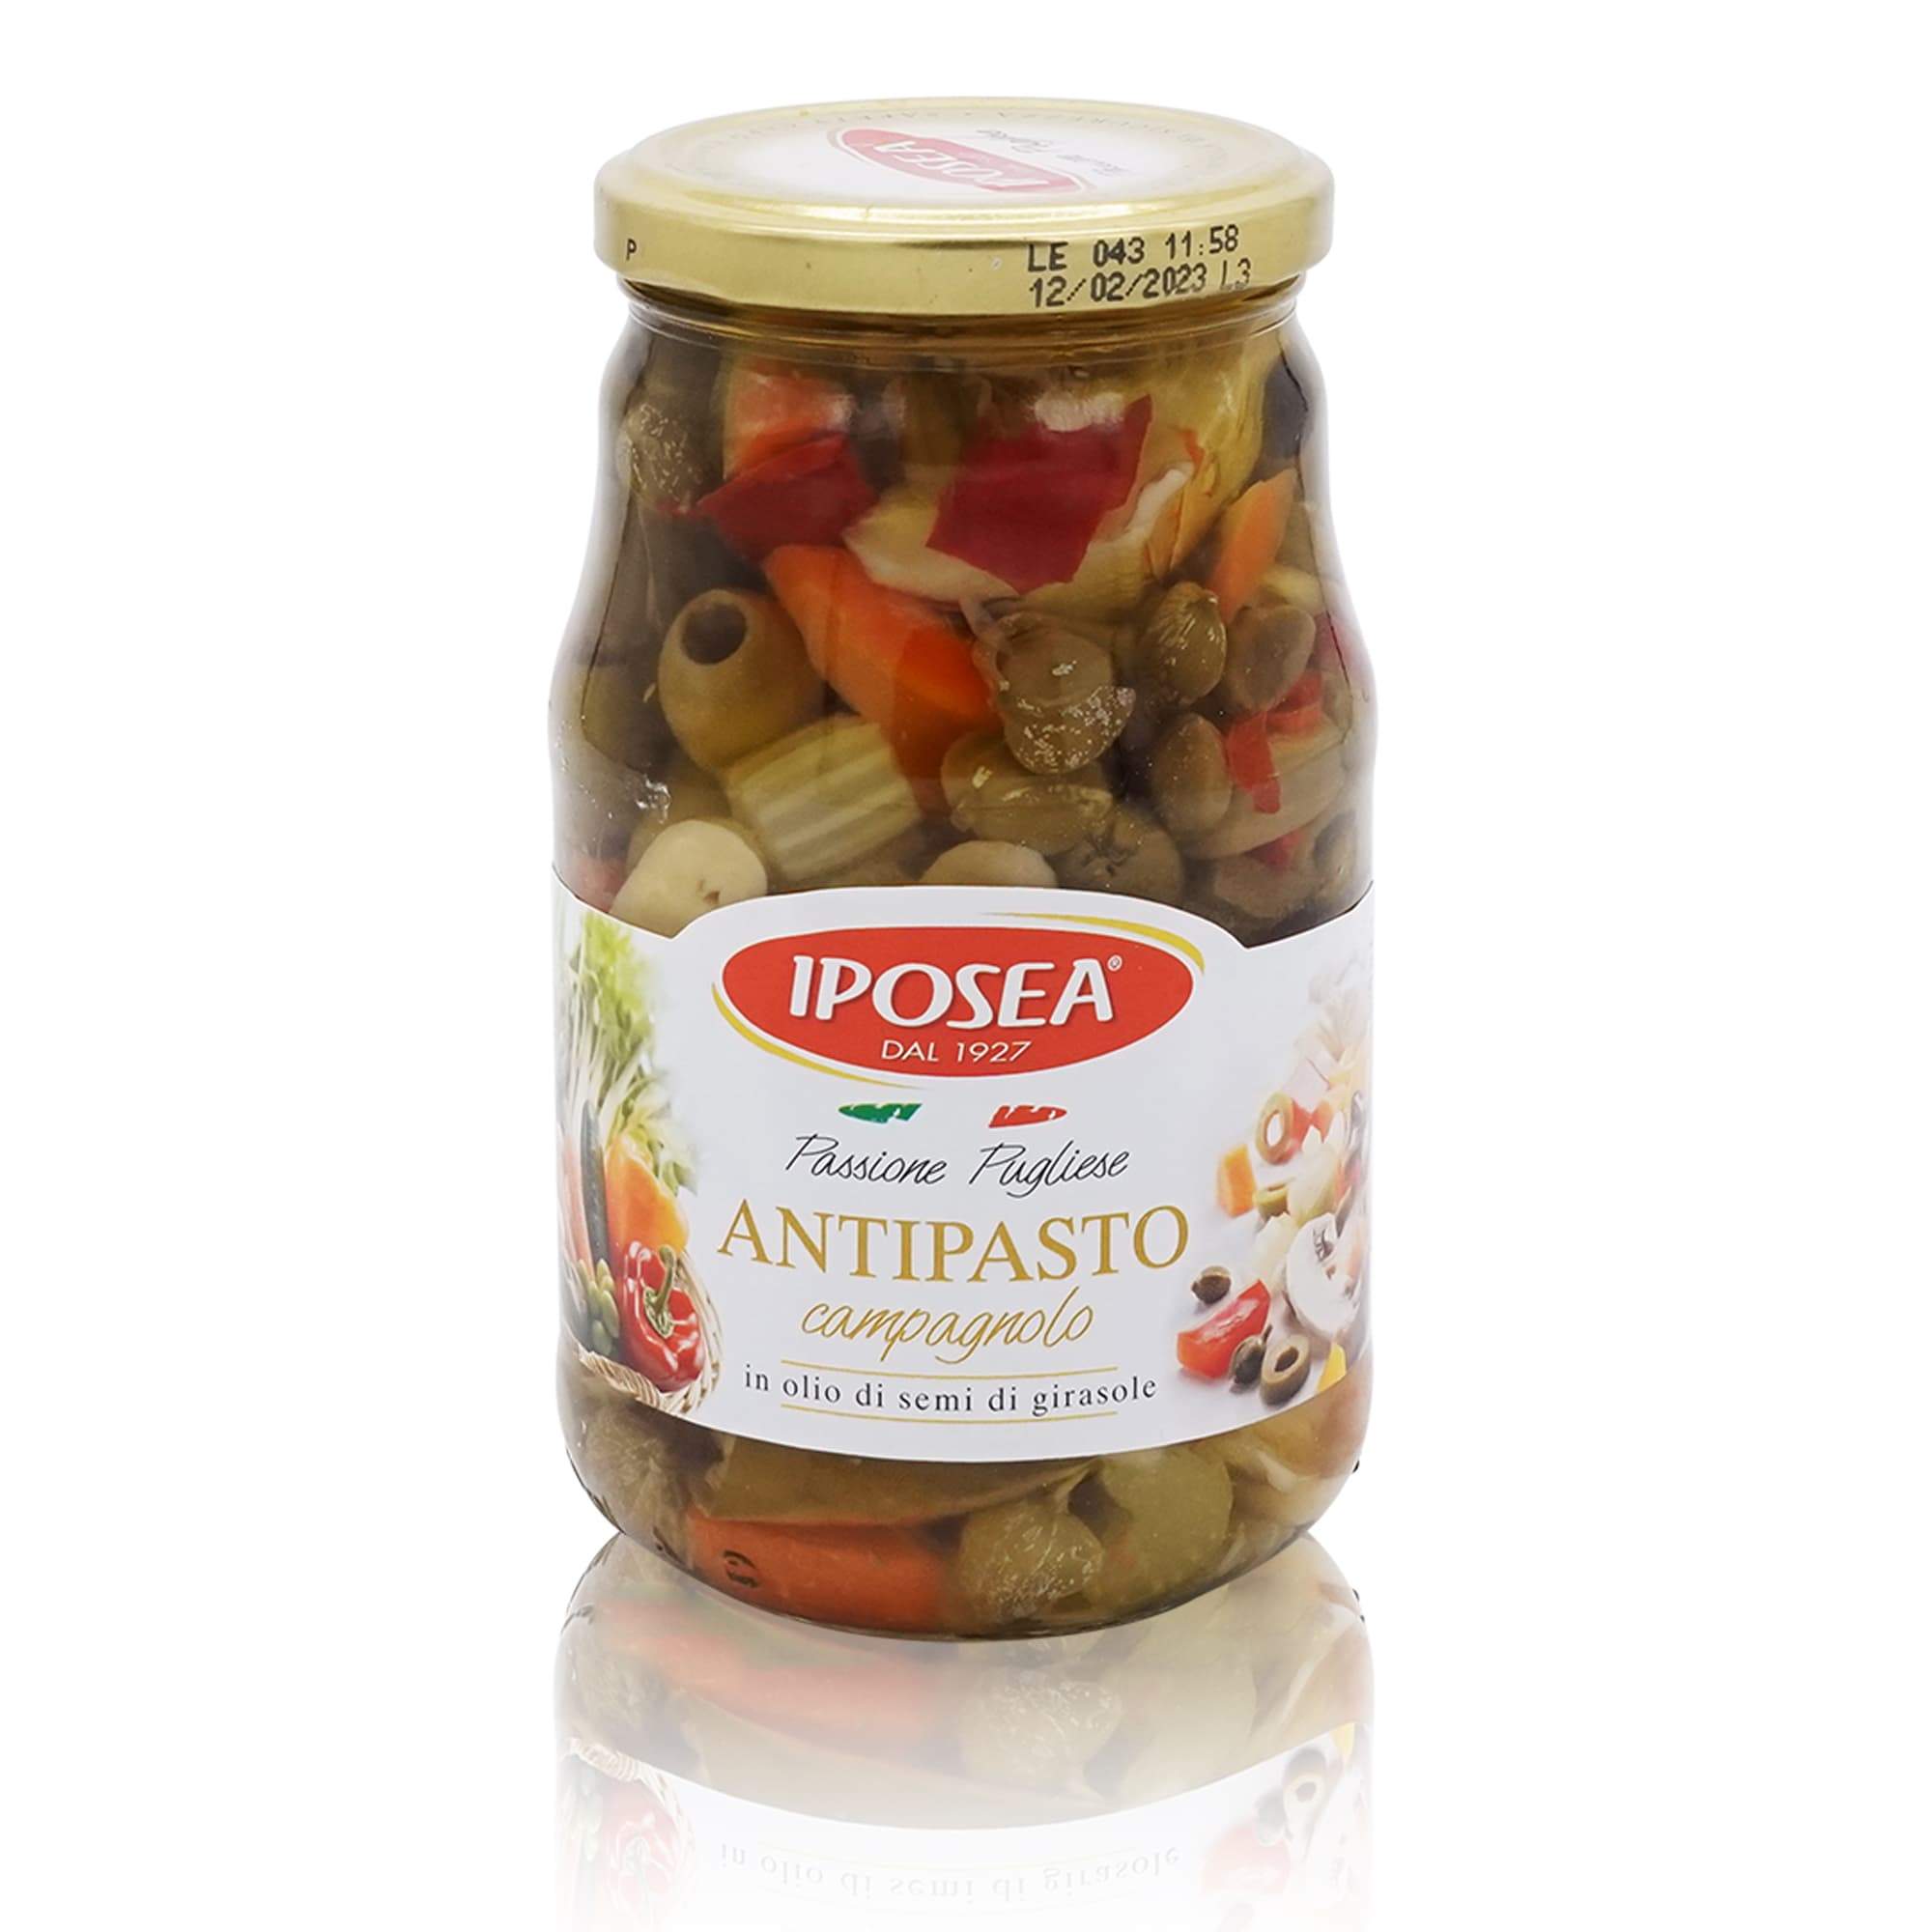 IPOSEA Antipasto Campagnolo – Gemüsevorspeise - 0,53kg - italienisch-einkaufen.de